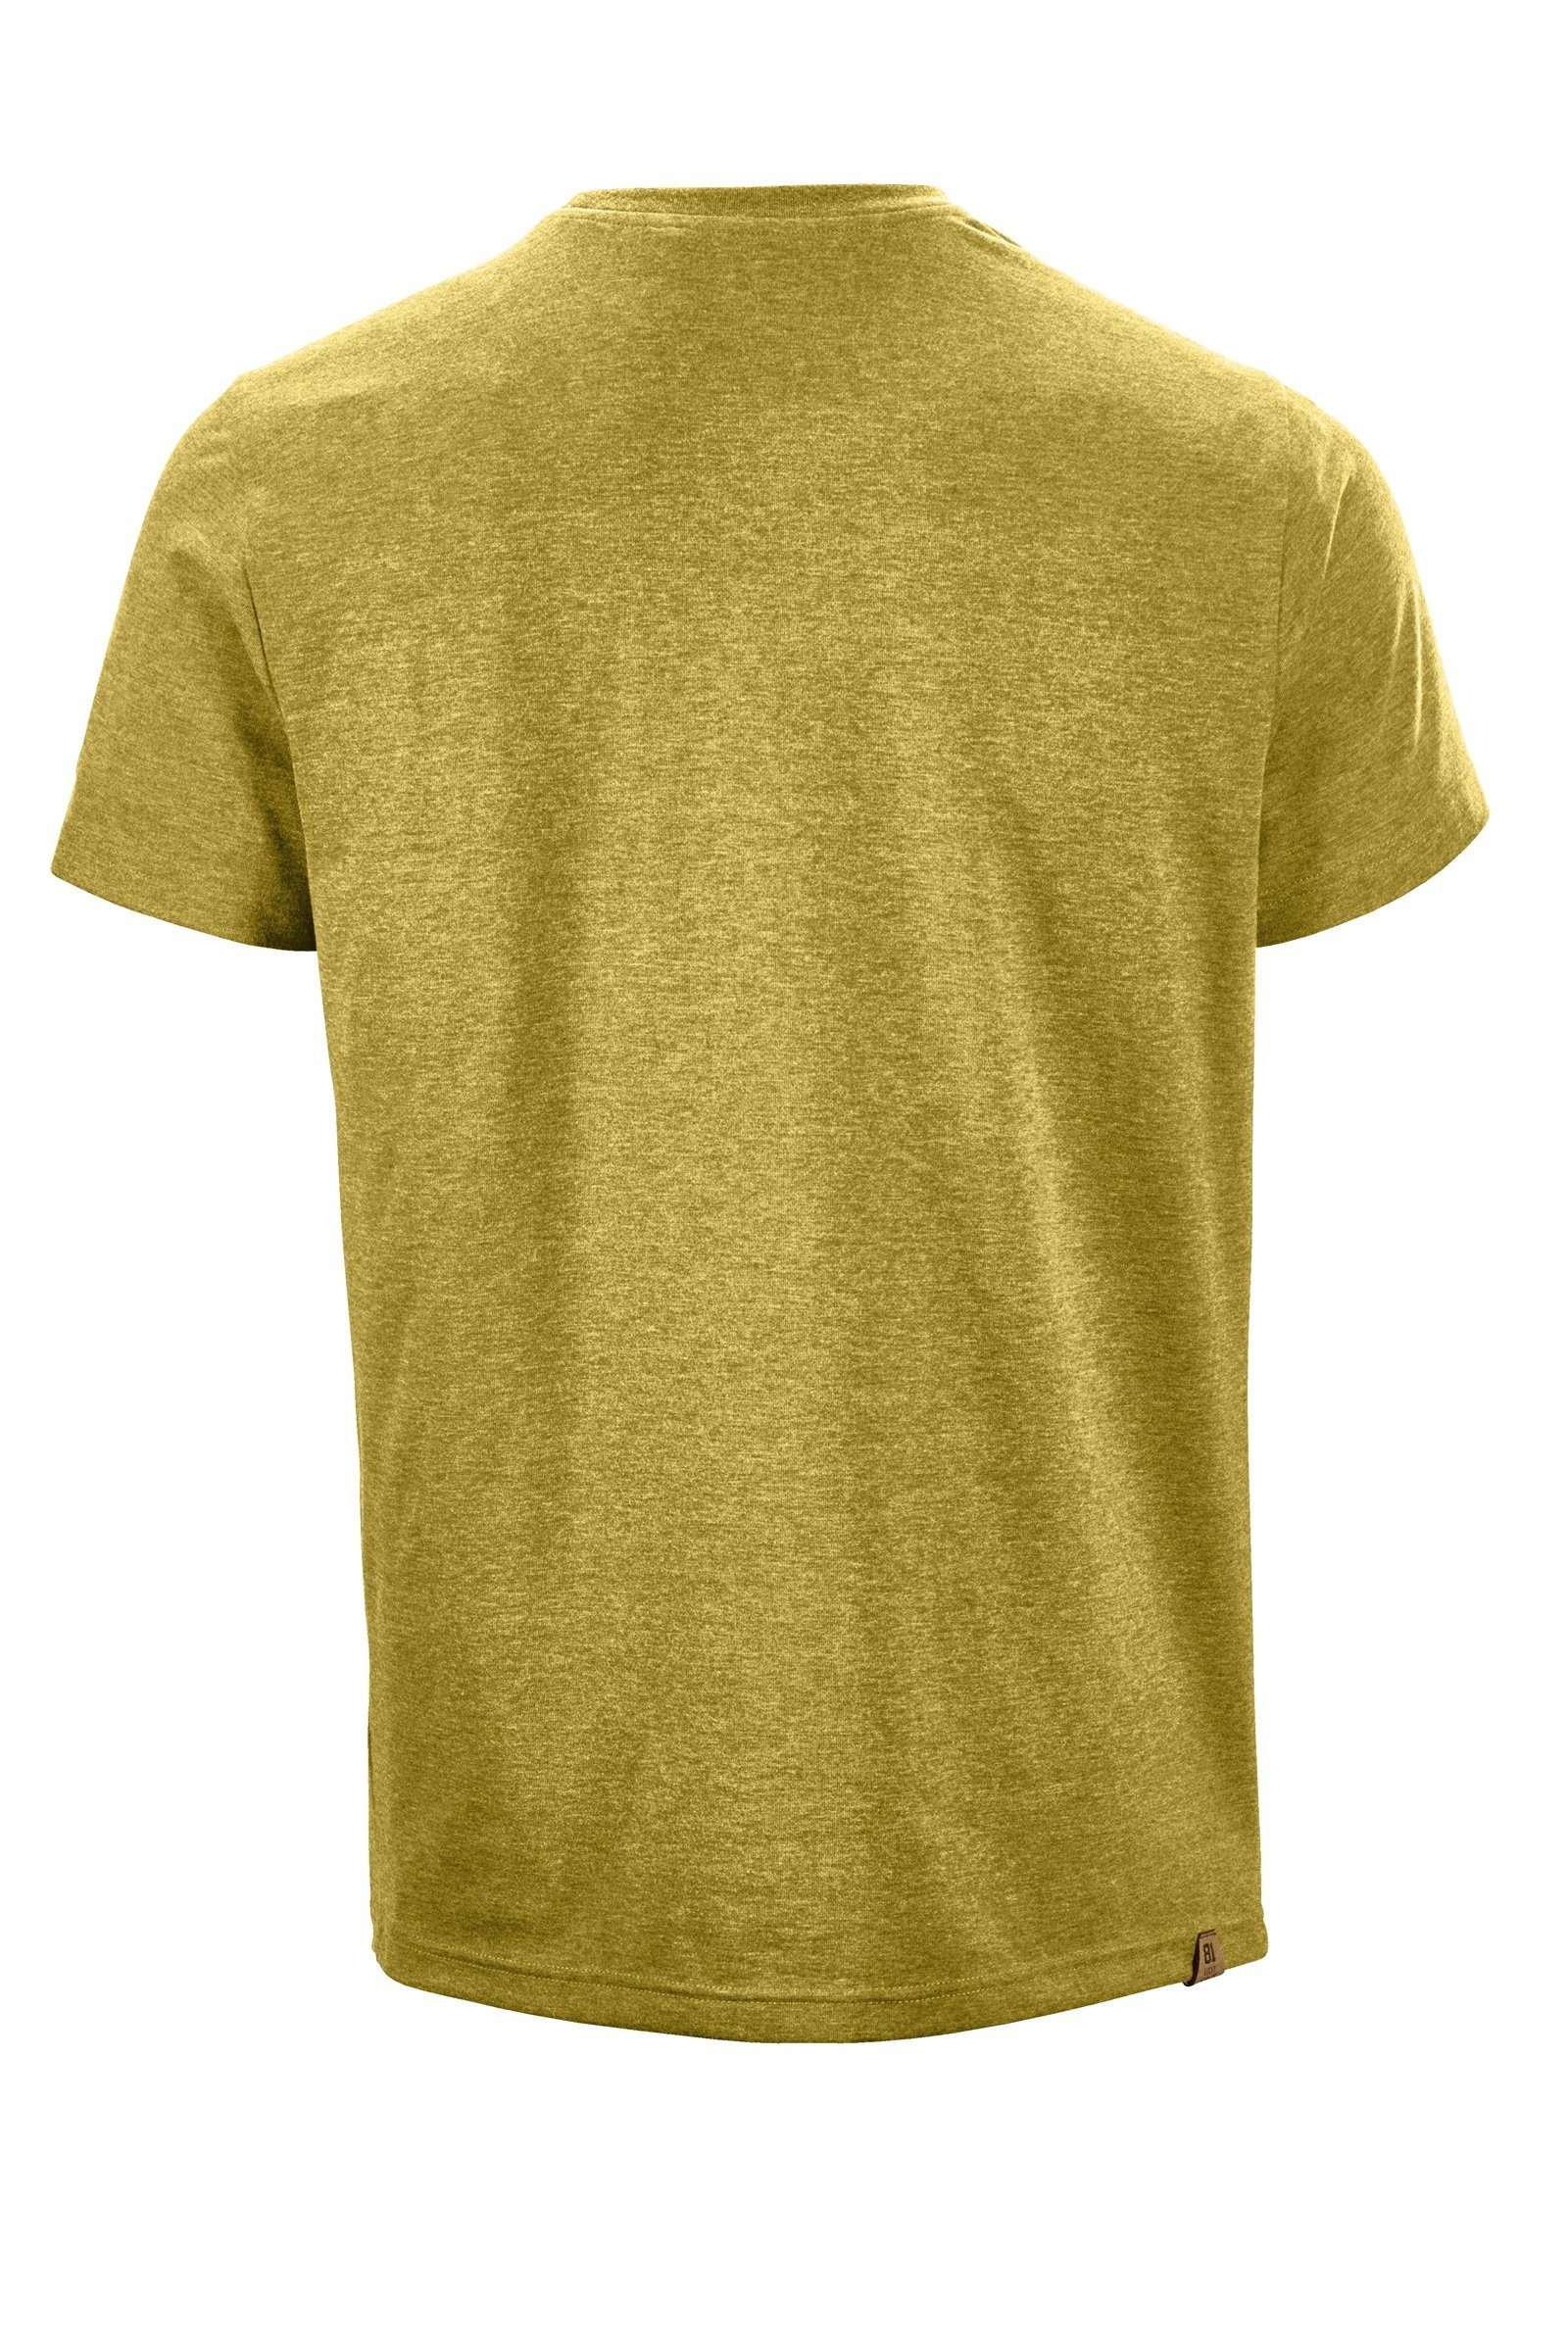 G.I.G.A. DX by killtec T-Shirt Adult G.I.G.A. Ederra C DX T-Shirt MN Herren gebranntes gelb TSHRT